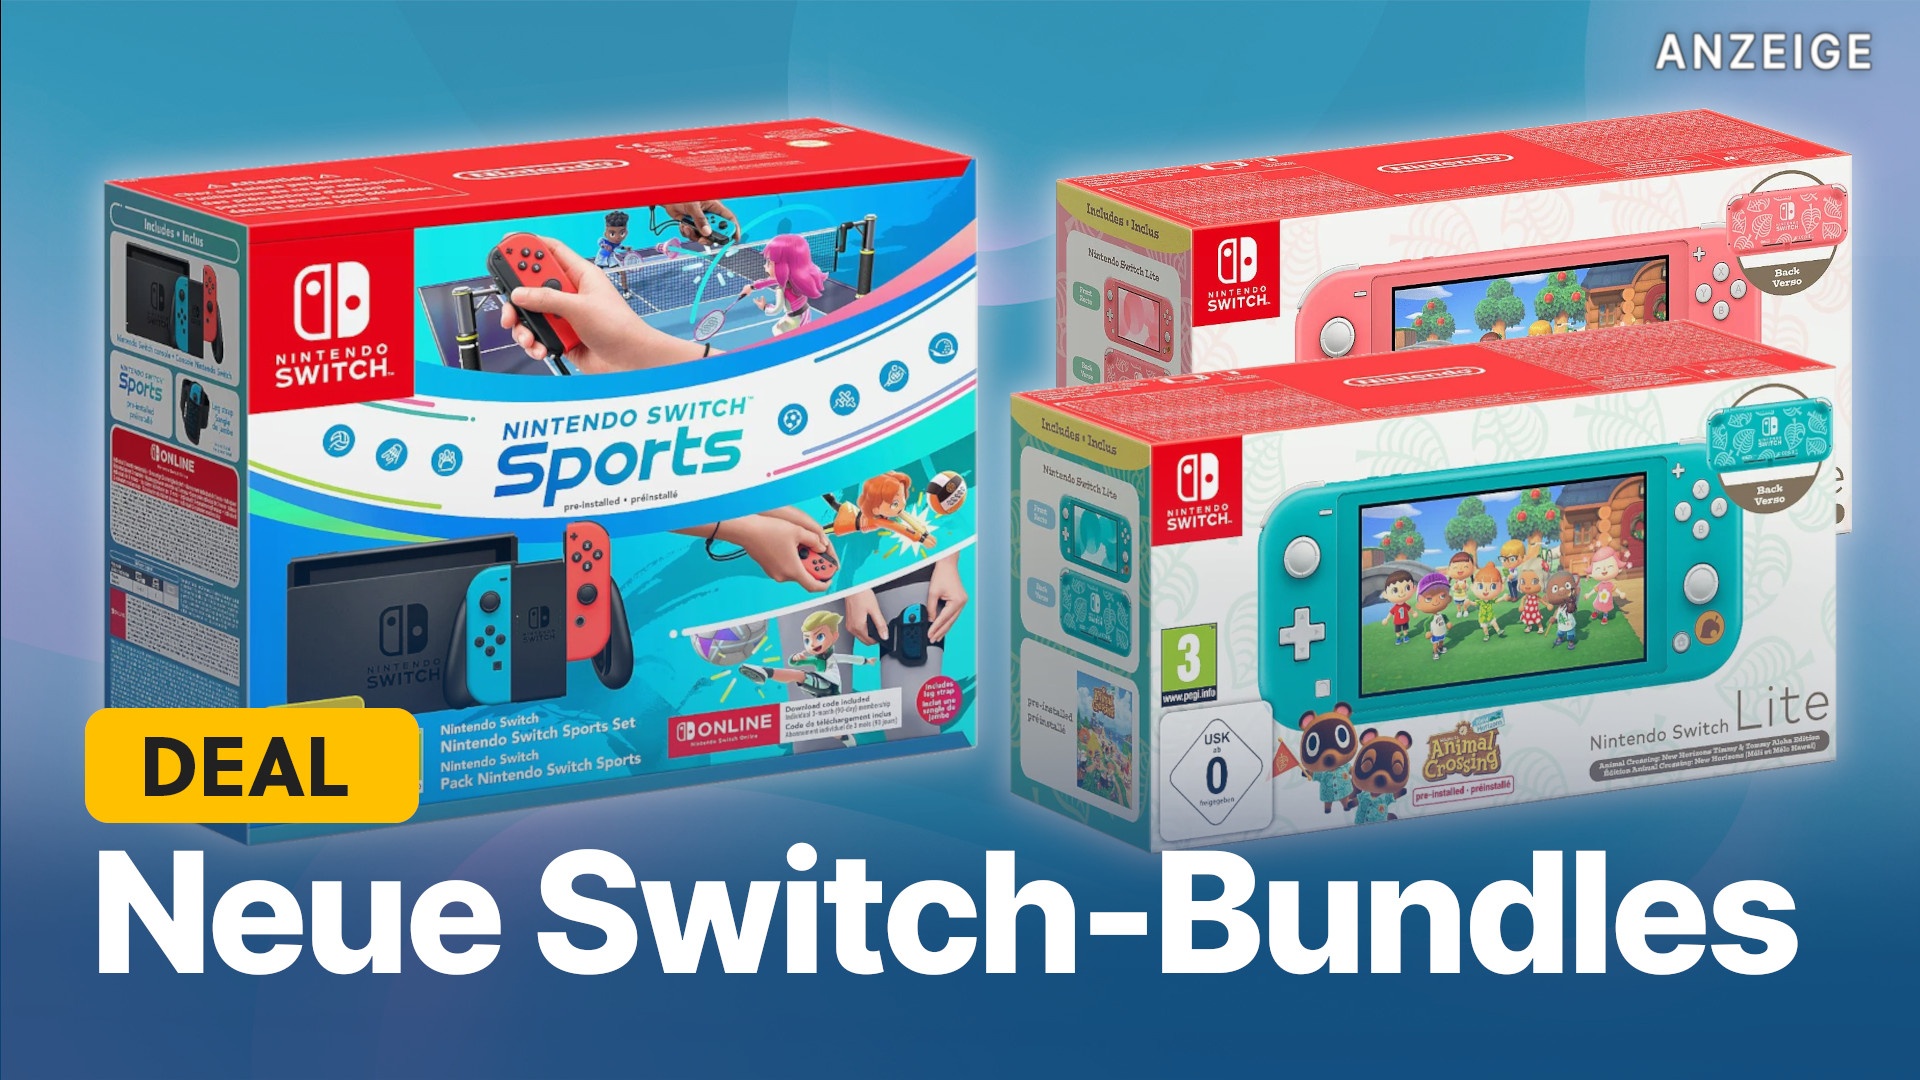 Crossing günstig erstaunlich Animal Sports Bundles Die neuen mit sind Nintendo Switch & Switch: